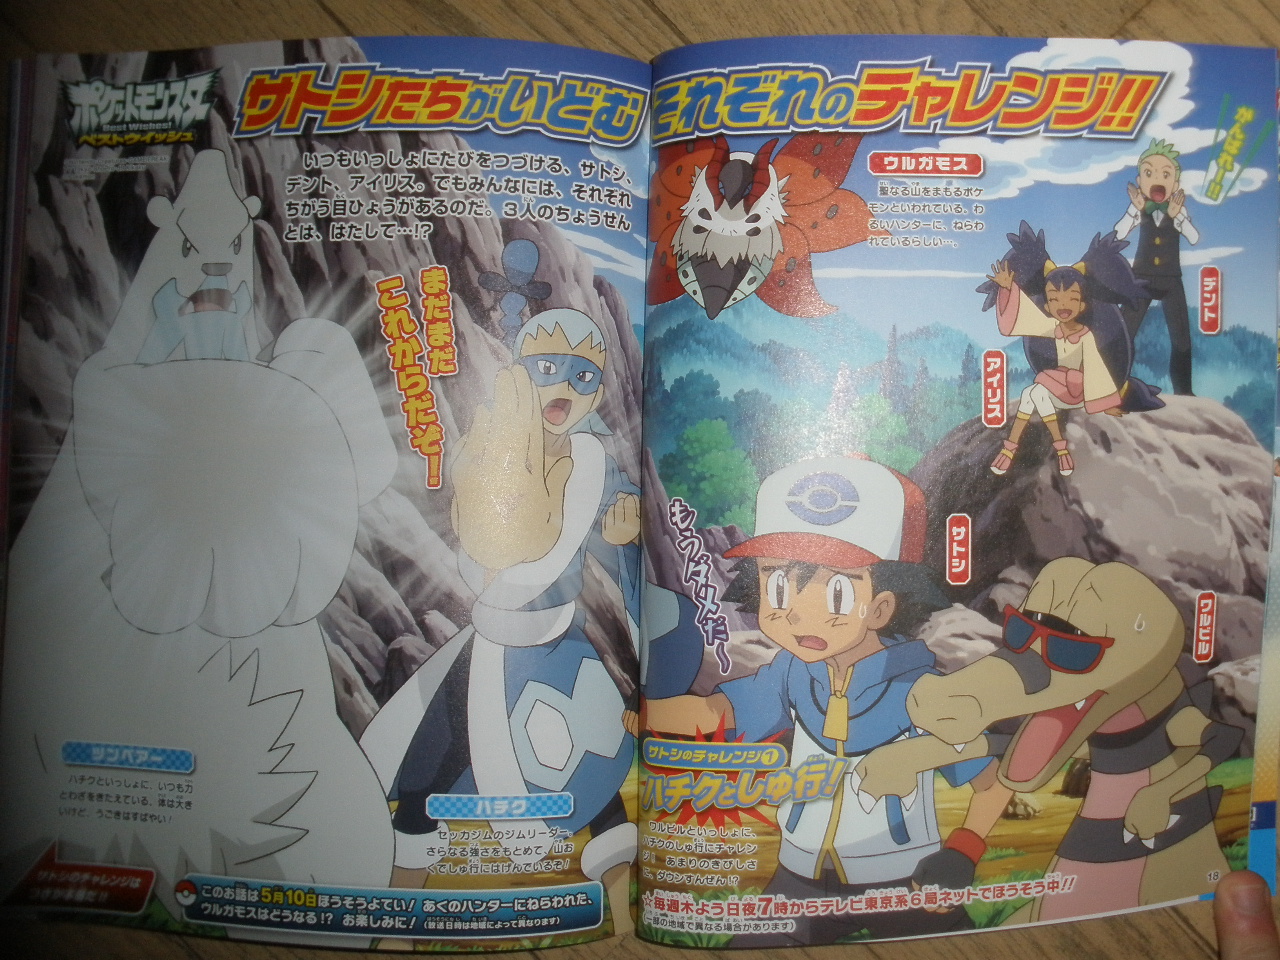 Títulos dos Próximos episódios de Sun & Moon – Pokémon Mythology